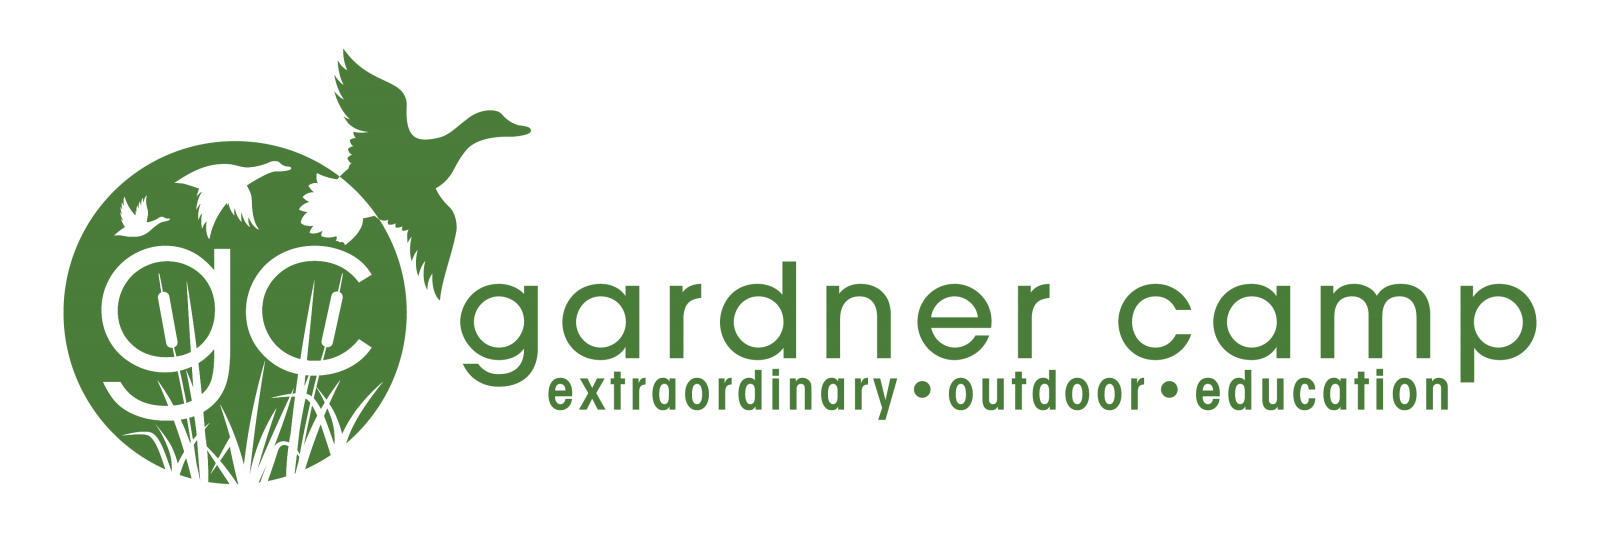 Gardner Camp Green Logo